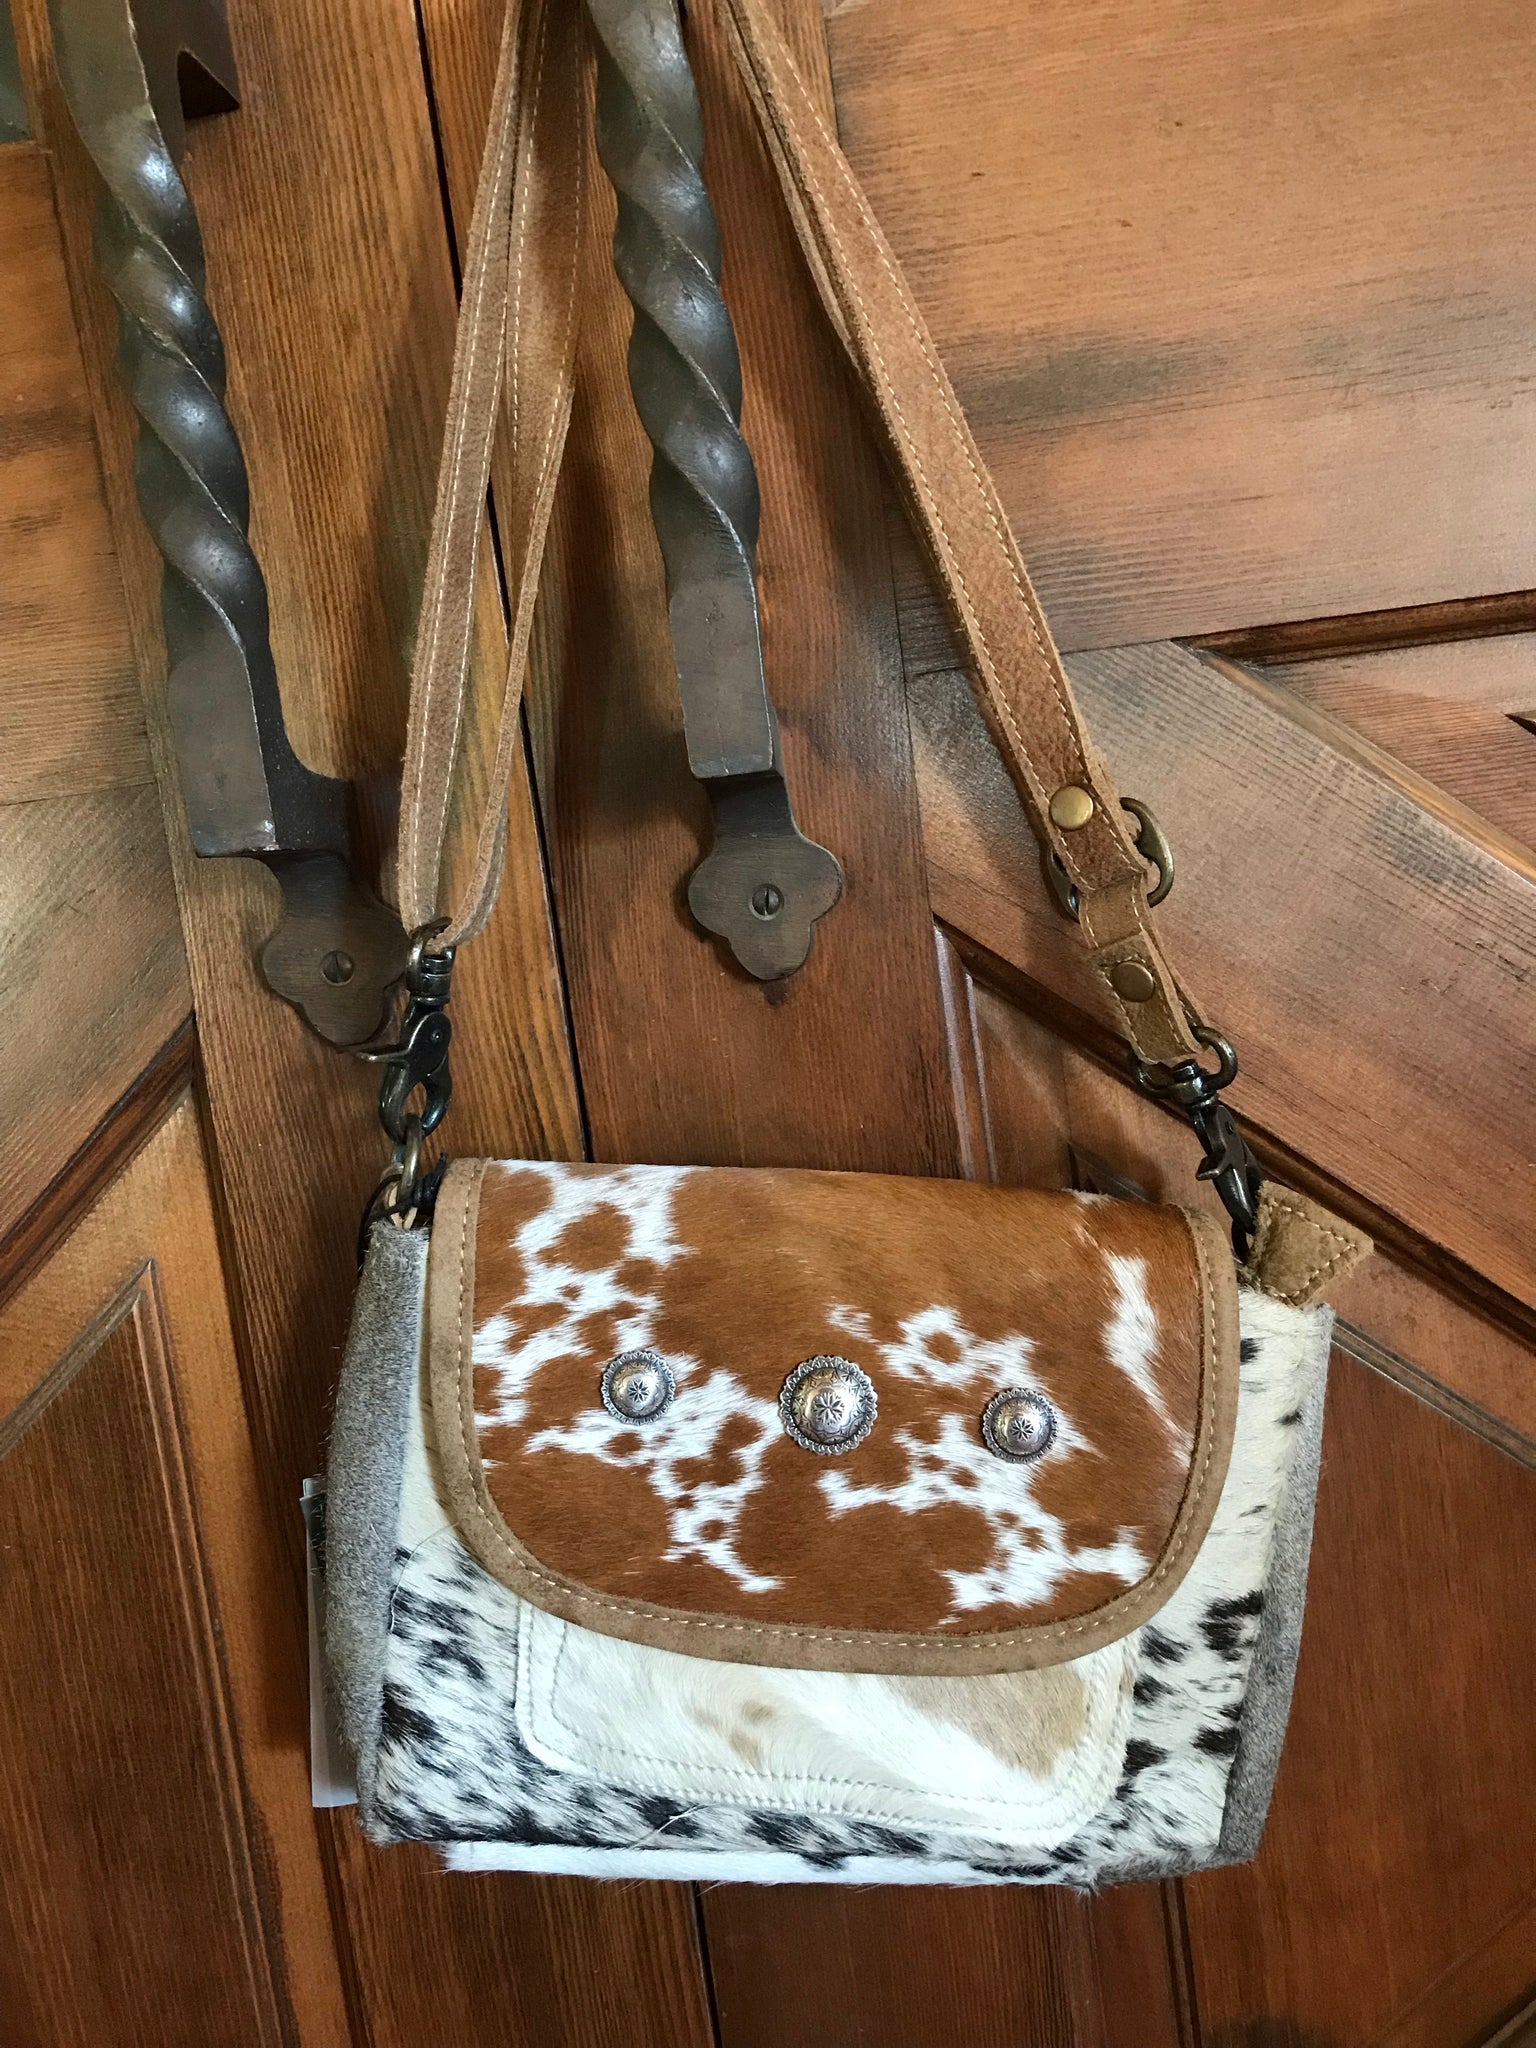 Vintage Rustic Medium Size 1960s Tooled Leather Painted Flowers Saddle Bag  Purse Groovy Boho Hippie - Etsy | Saddle bag purse, Purses and bags, Bags